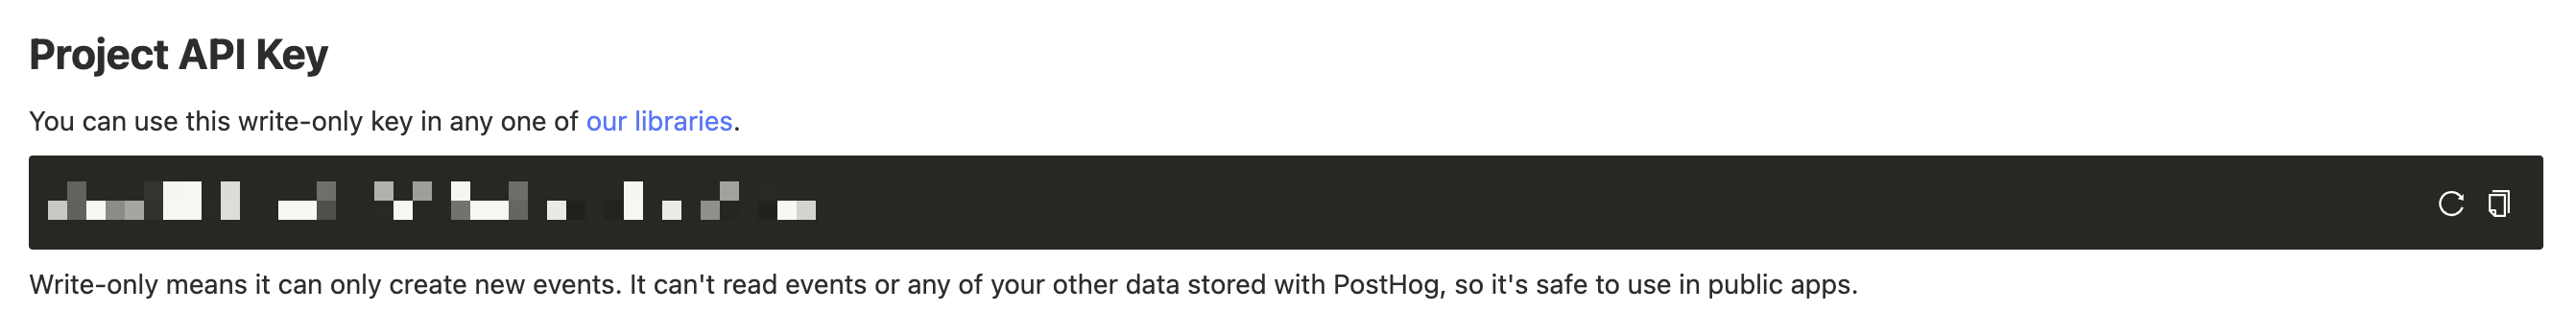 PostHog Project API Key